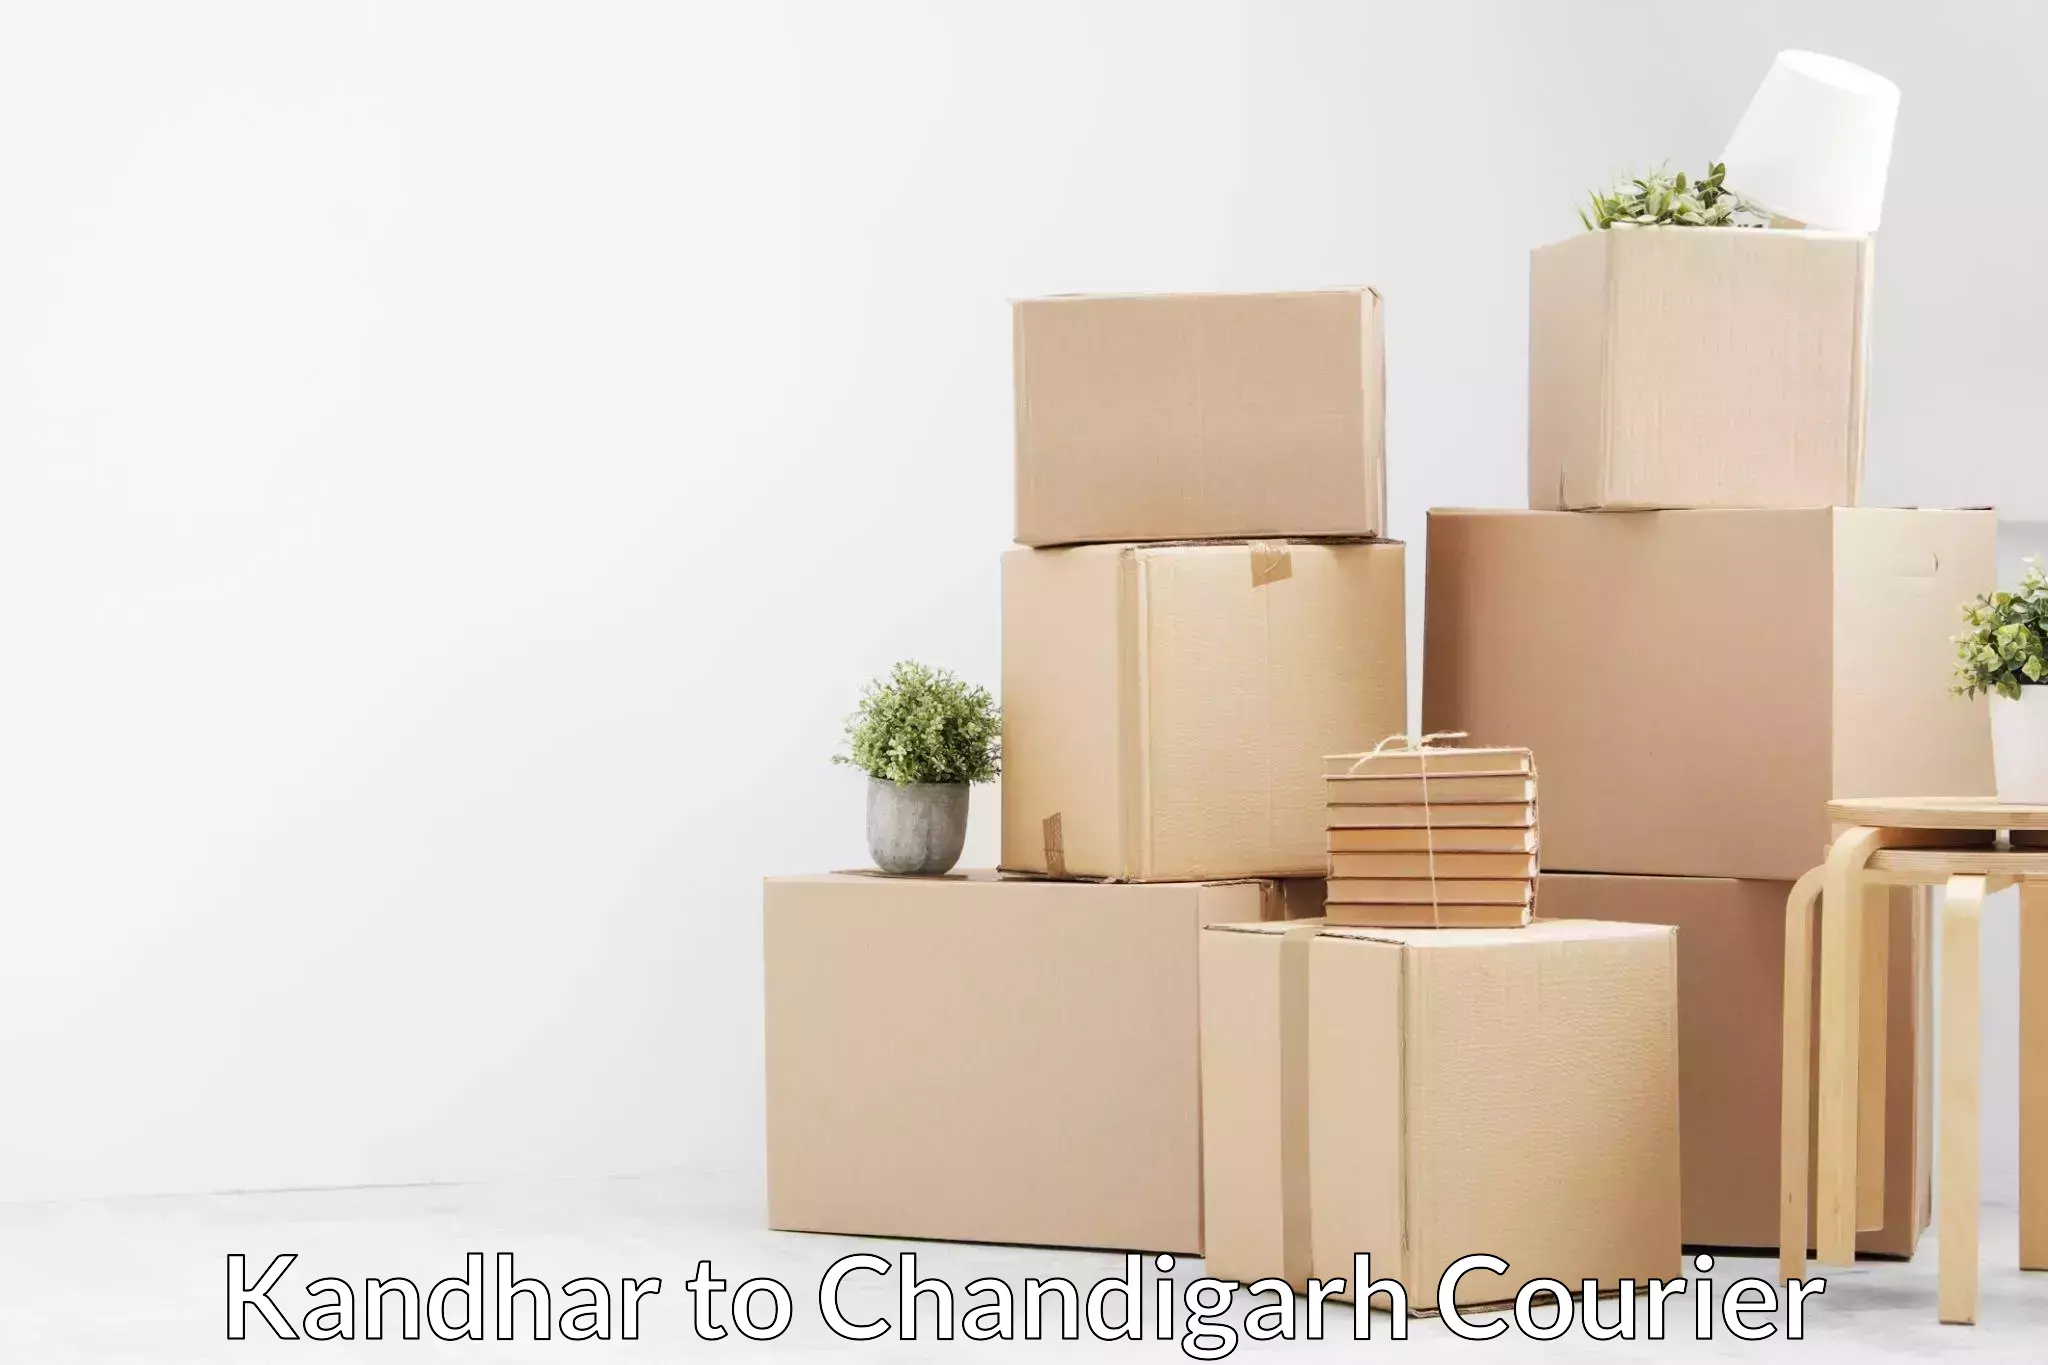 Furniture transport experts Kandhar to Chandigarh